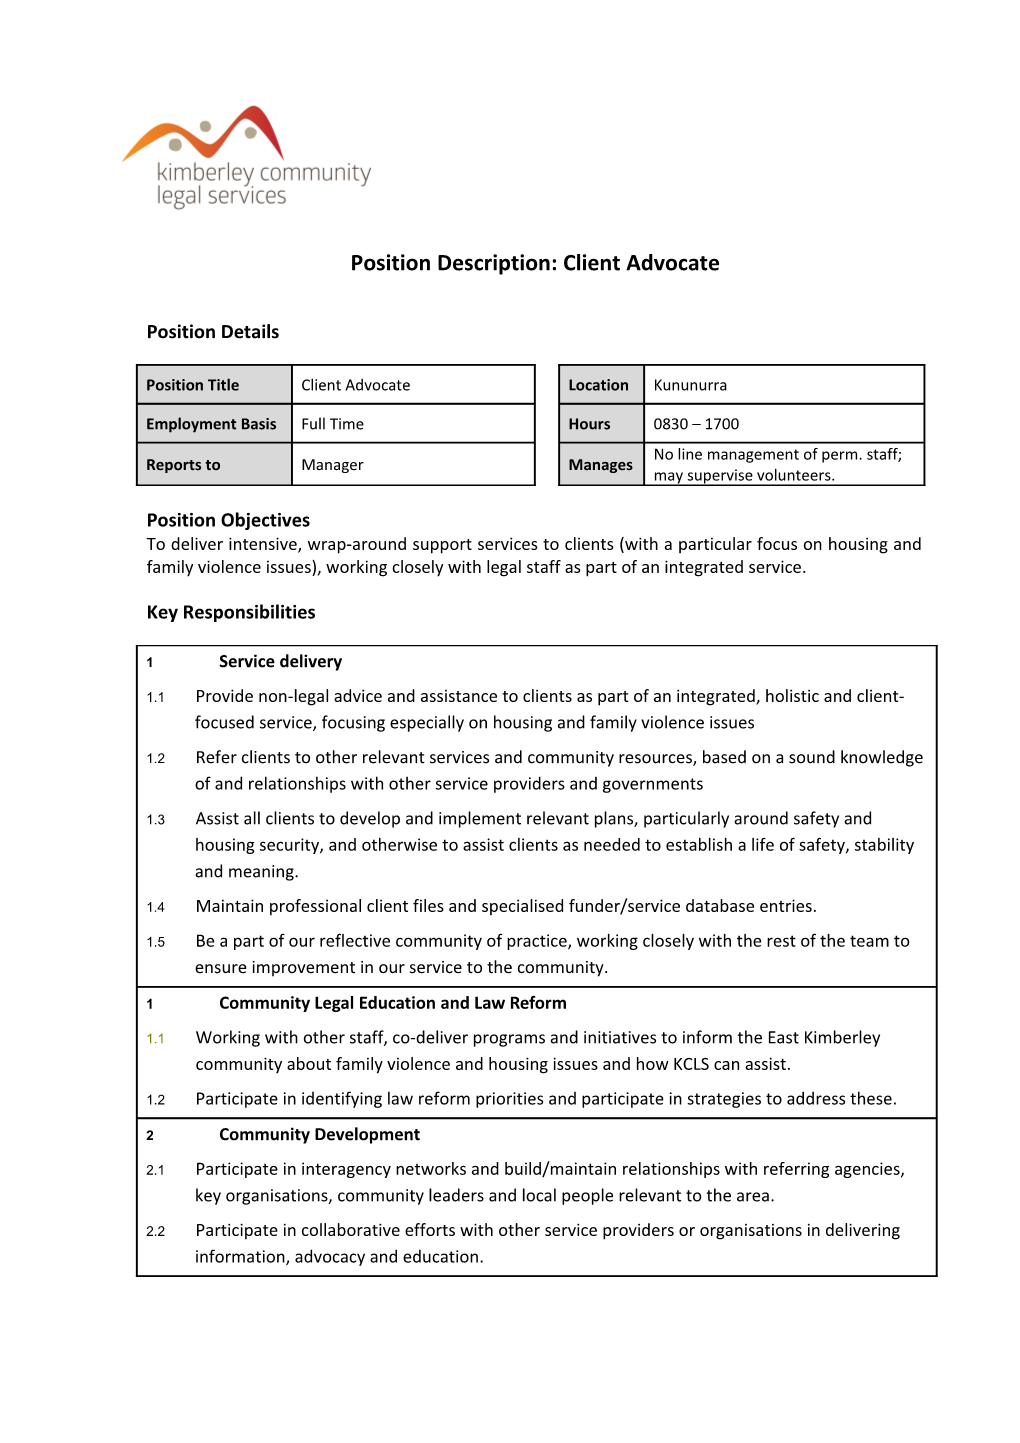 Position Description Form s4